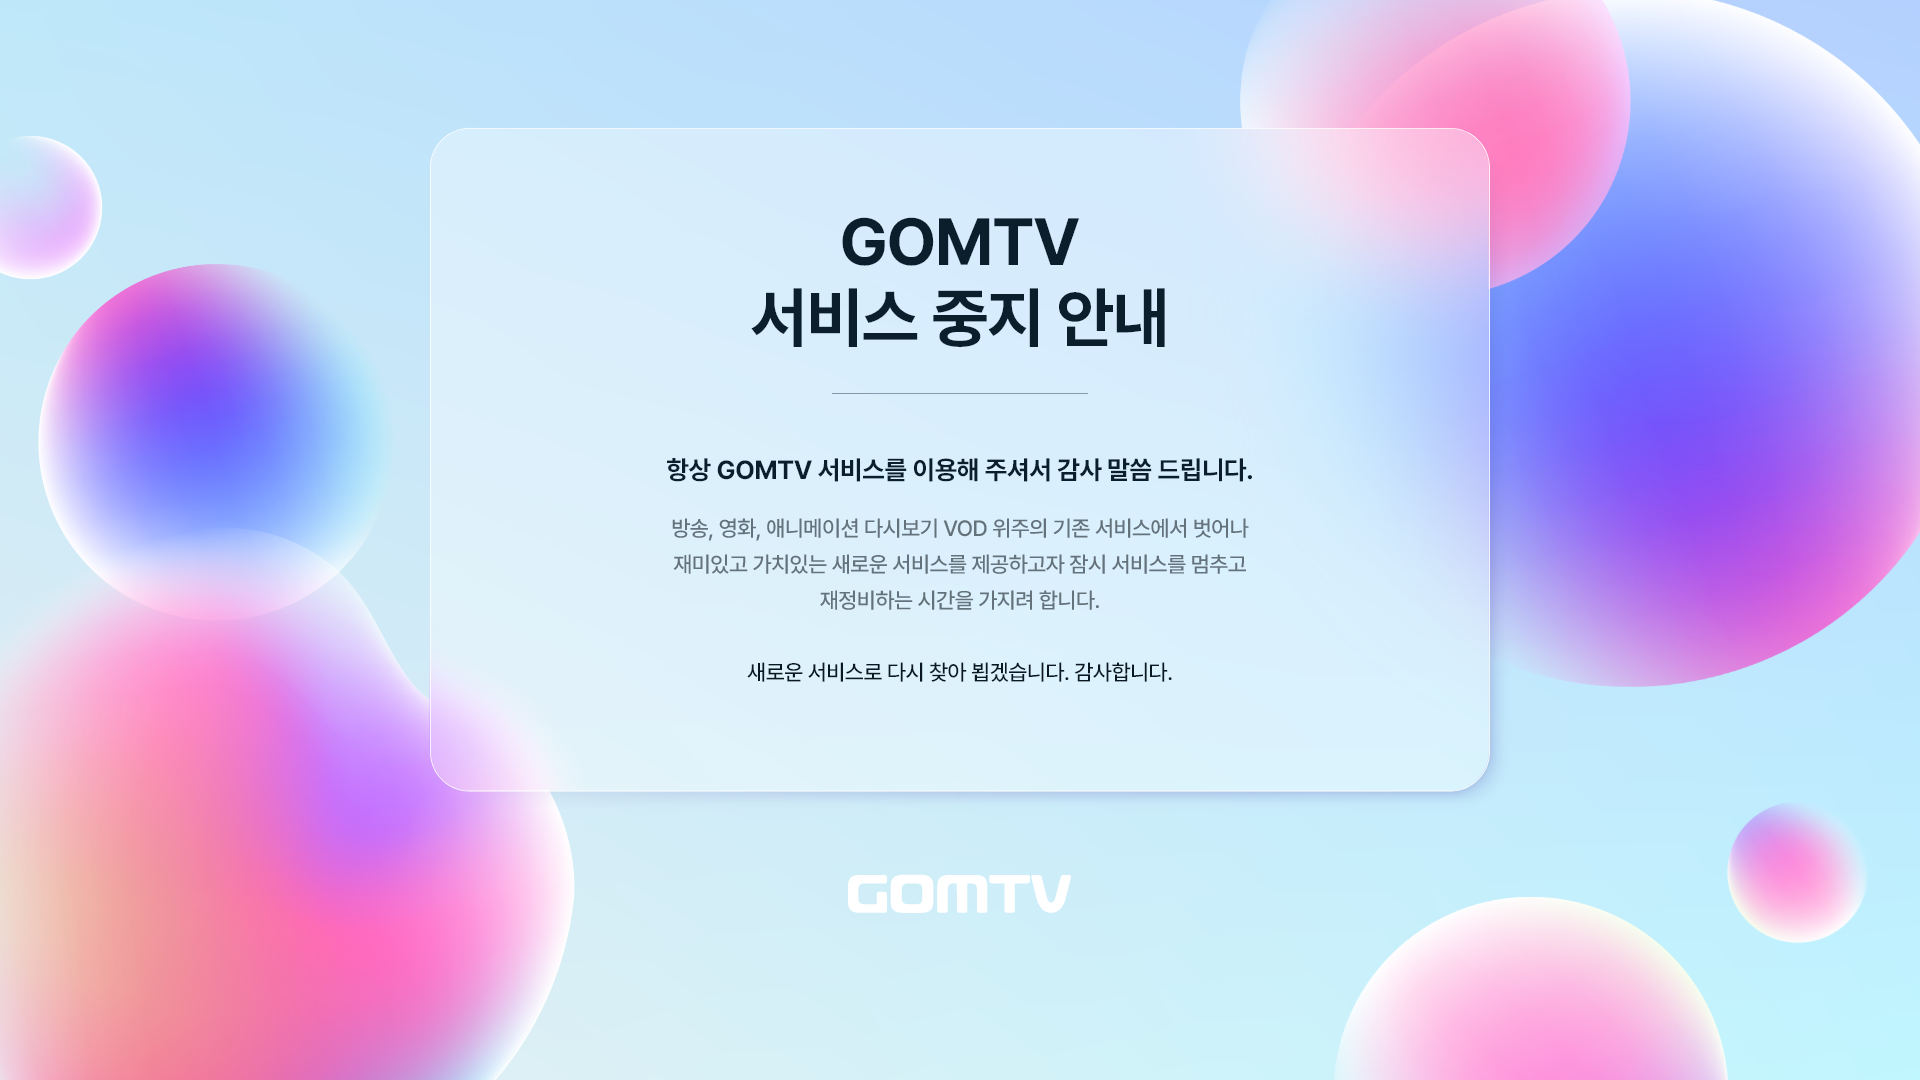 GOMTV 서비스 종료 안내 항상 GOMTV 서비스를 이용해 주셔서 감사 말씀 드립니다. 방송, 영화, 애니메이션 다시보기 VOD 위주의 기존 서비스에서 벗어나 재미있고 가치있는 새로운 서비스를 제공하고자 잠시 서비스를 멈추고 재정비하는 시간을 가지려 합니다. 새로운 서비스로 다시 찾아 뵙겠습니다. 감사합니다. 